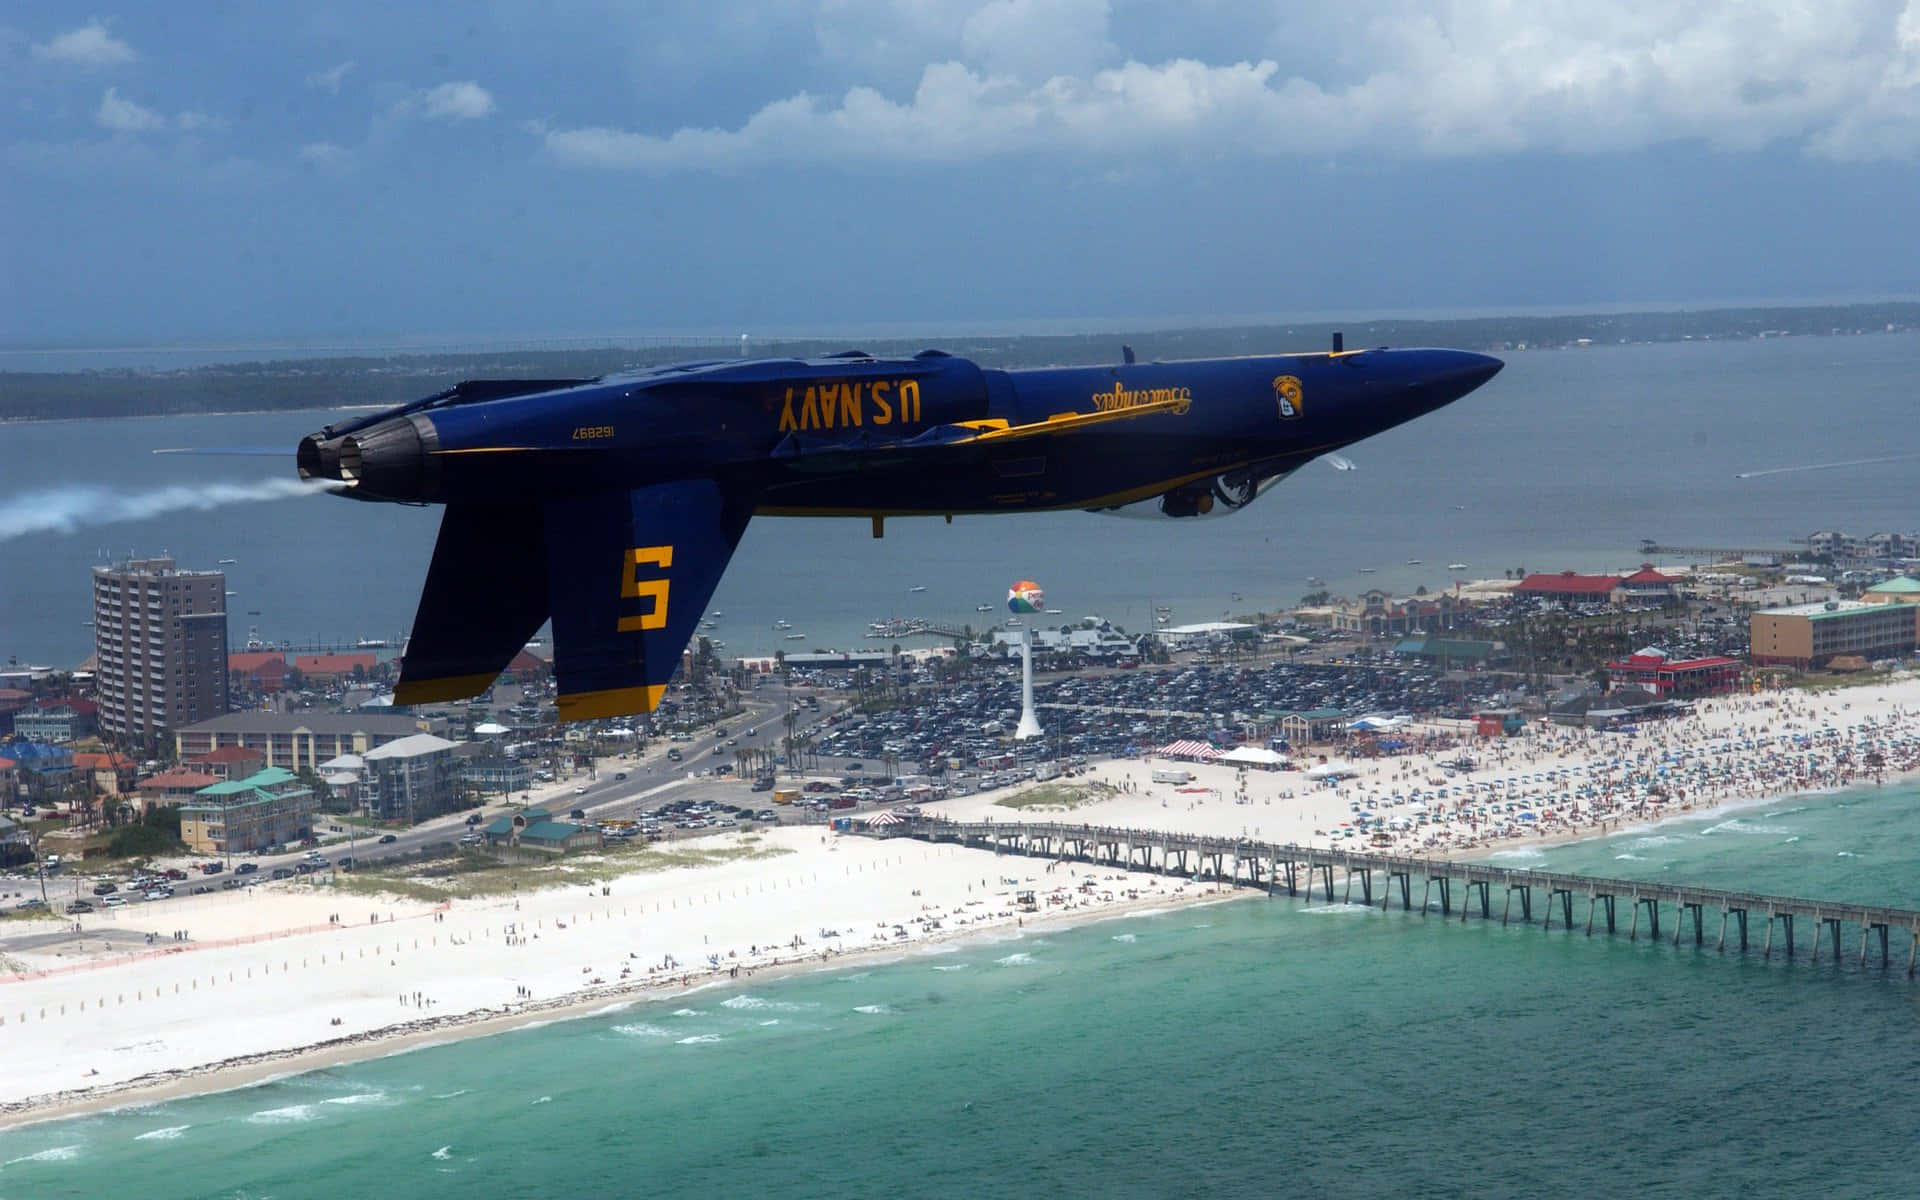 Jetpiloter fra det amerikanske marines Blue Angels letter højt på himlen. Wallpaper